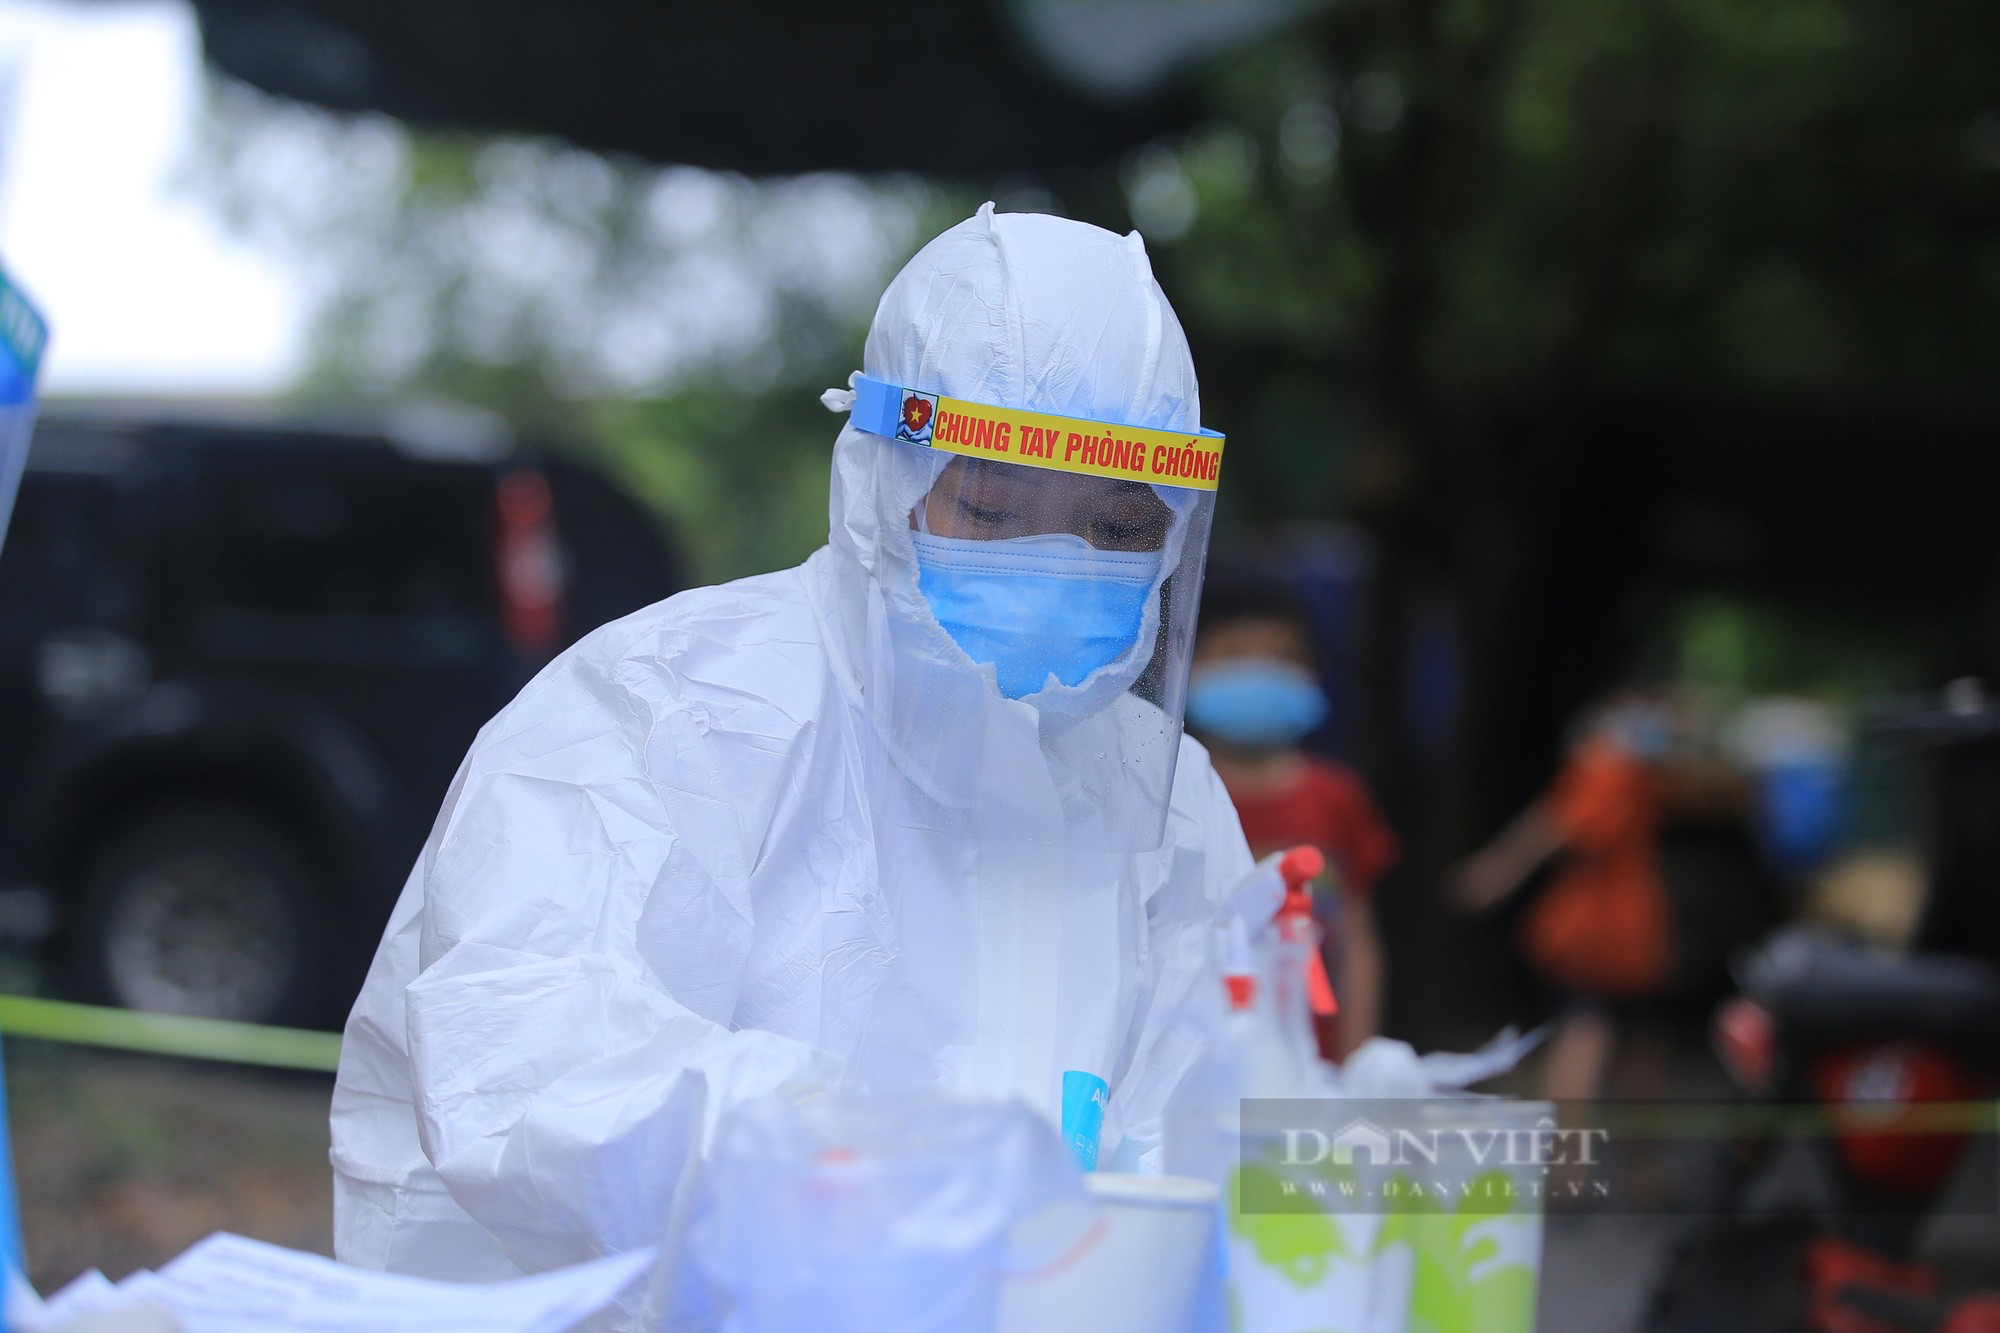 Hà Nội: Thêm 4 người ở Quốc Oai phát hiện dương tính SARS-CoV-2 qua sàng lọc, chưa rõ nguồn lây - Ảnh 2.